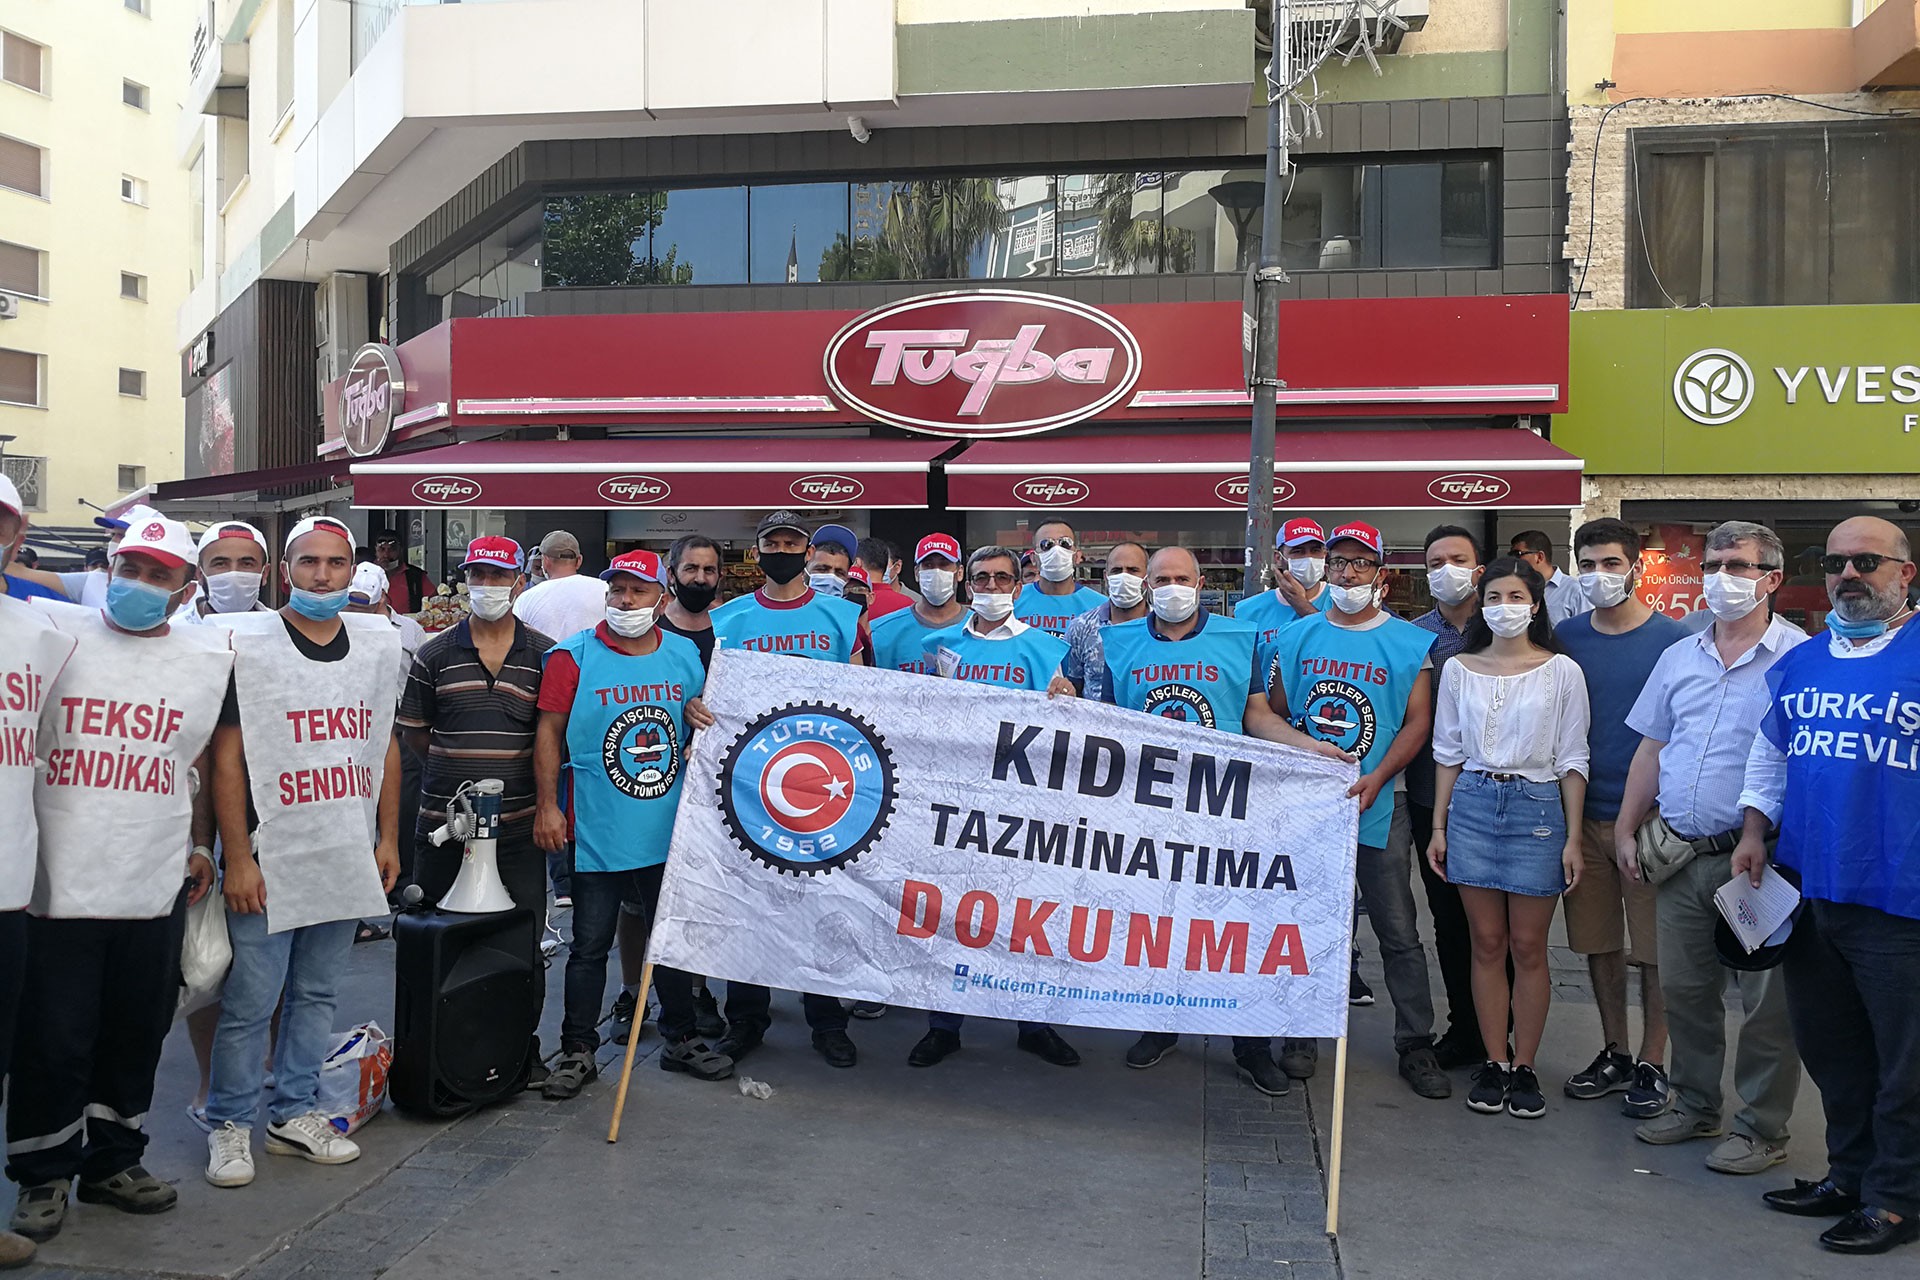 Türk-İş Ege Bölge Temsilciği Alsancak Kıbrısşehitleri caddesinde kıdem tazminatının fona devrine karşı basın açıklaması yaptı 